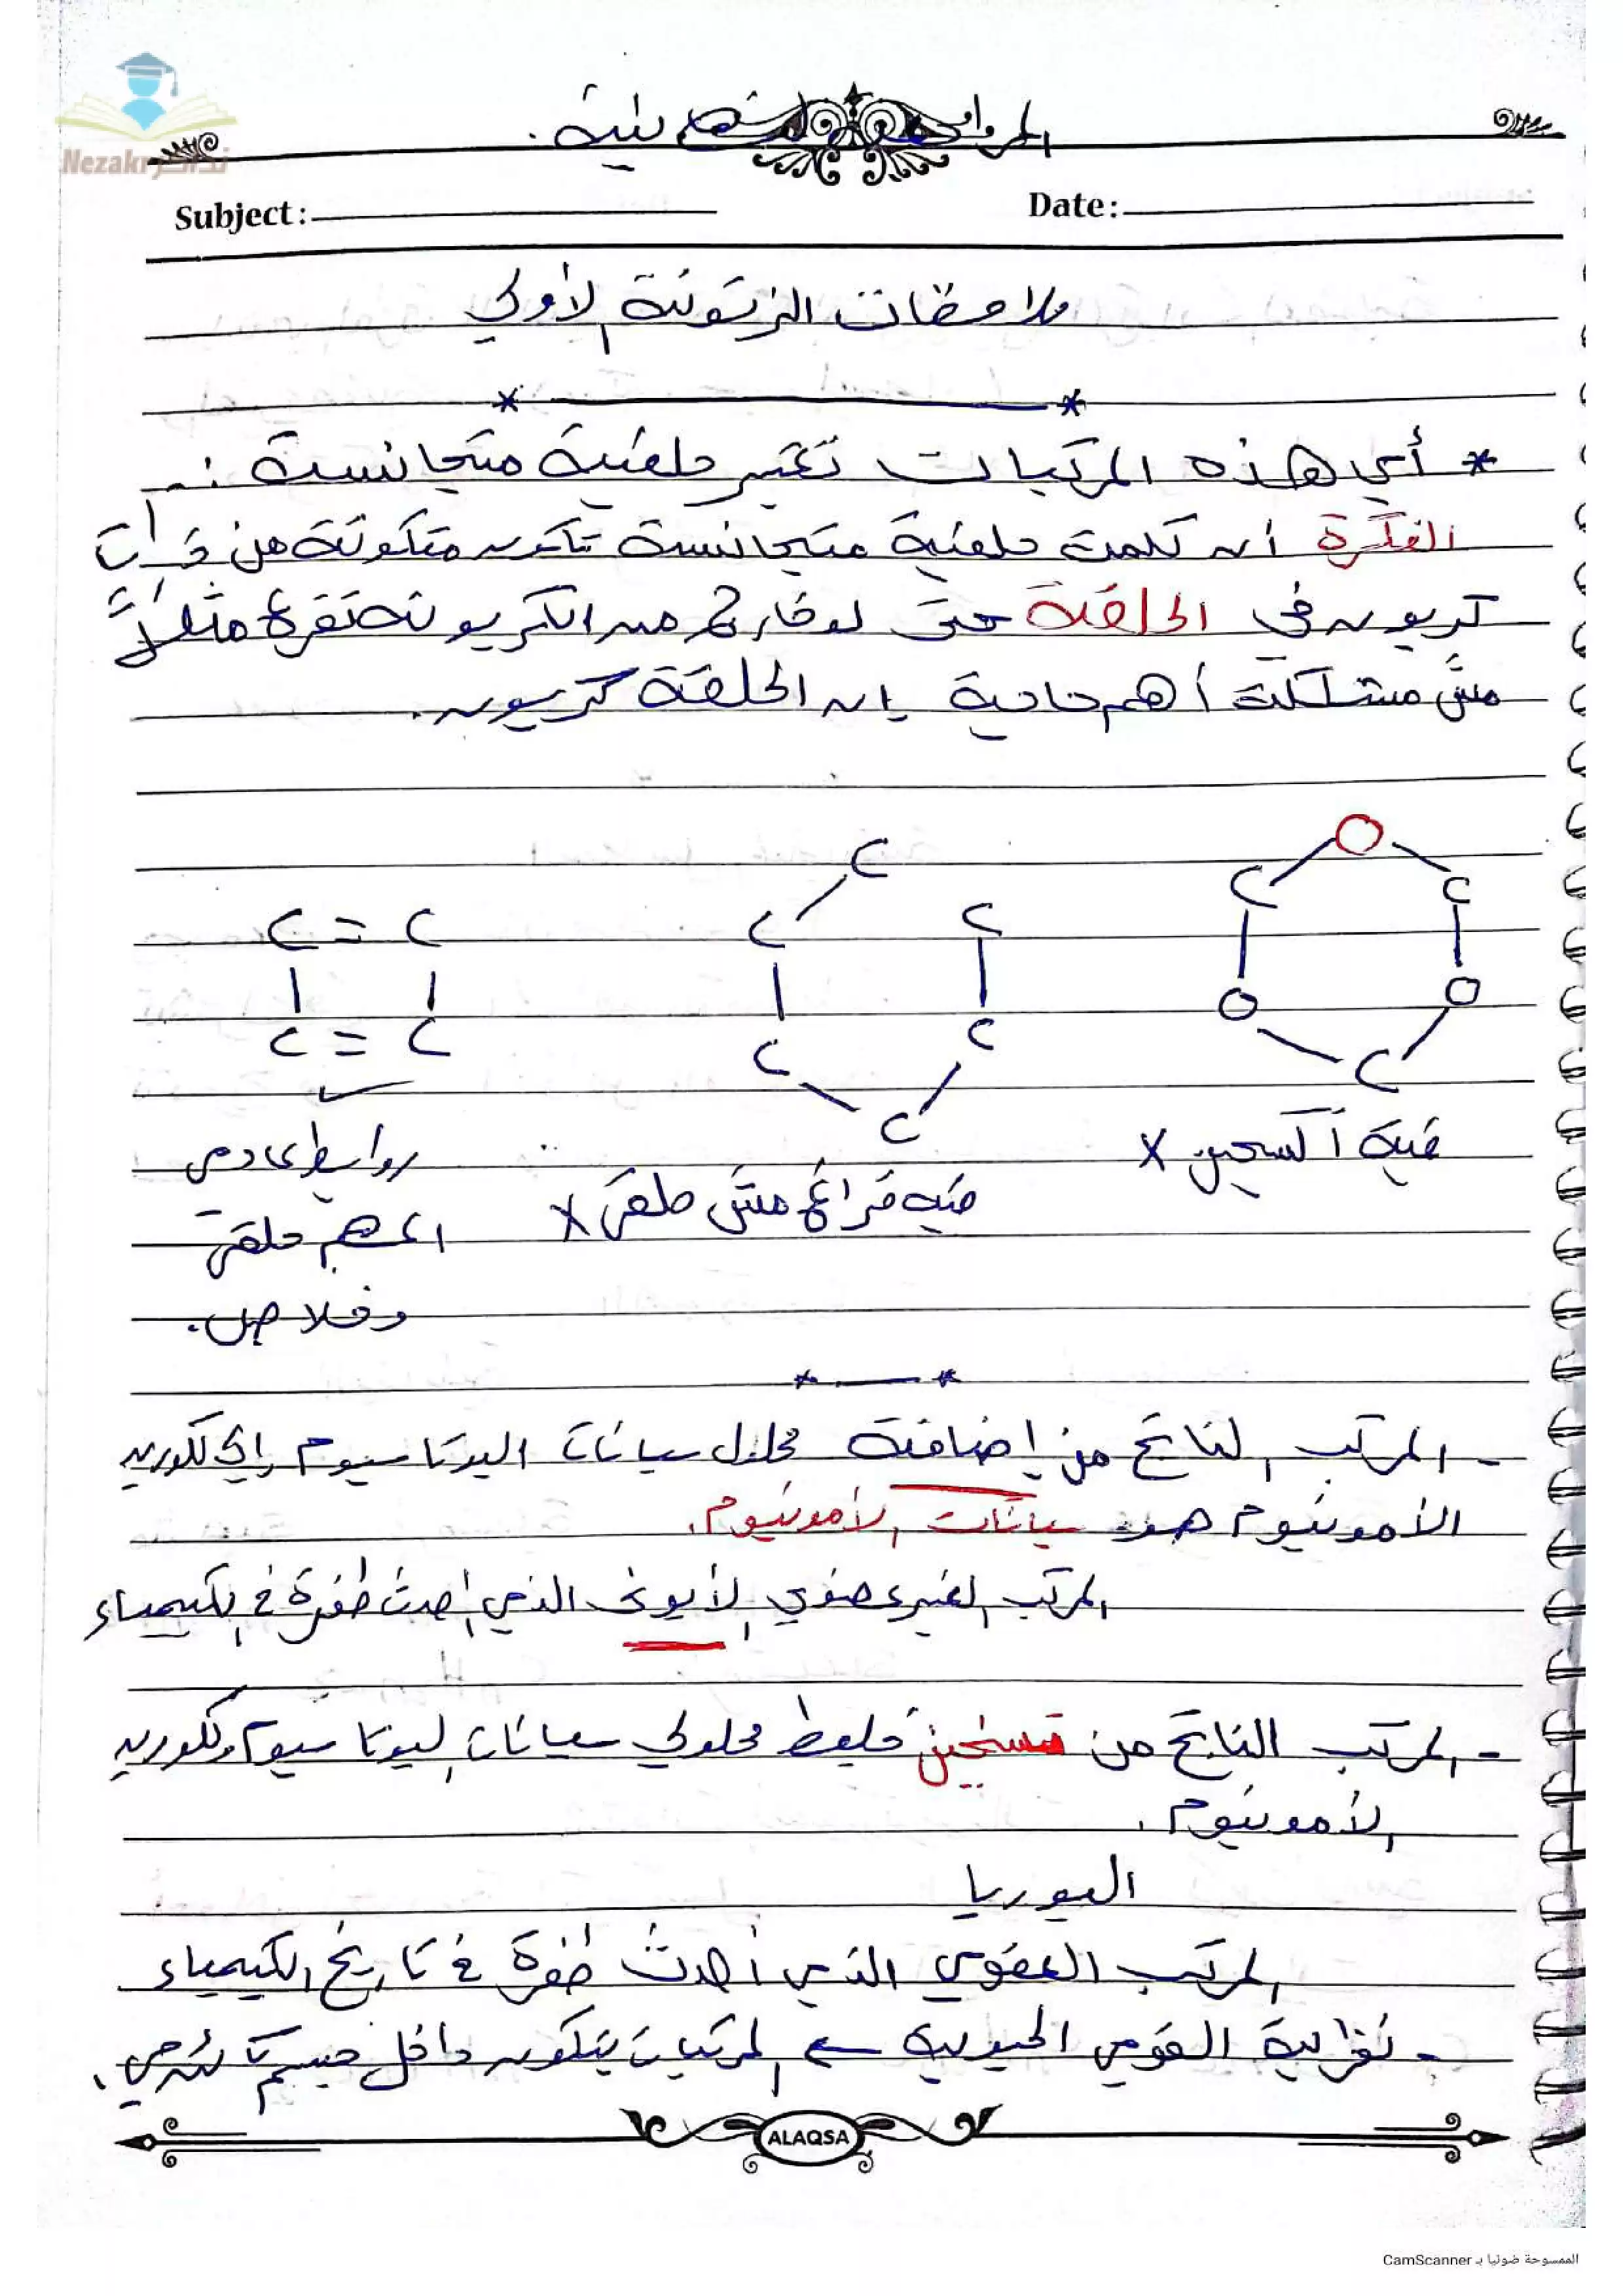 تحميل ملاحظات الباب الخامس: الكيمياء العضوية للصف الثالث الثانوي